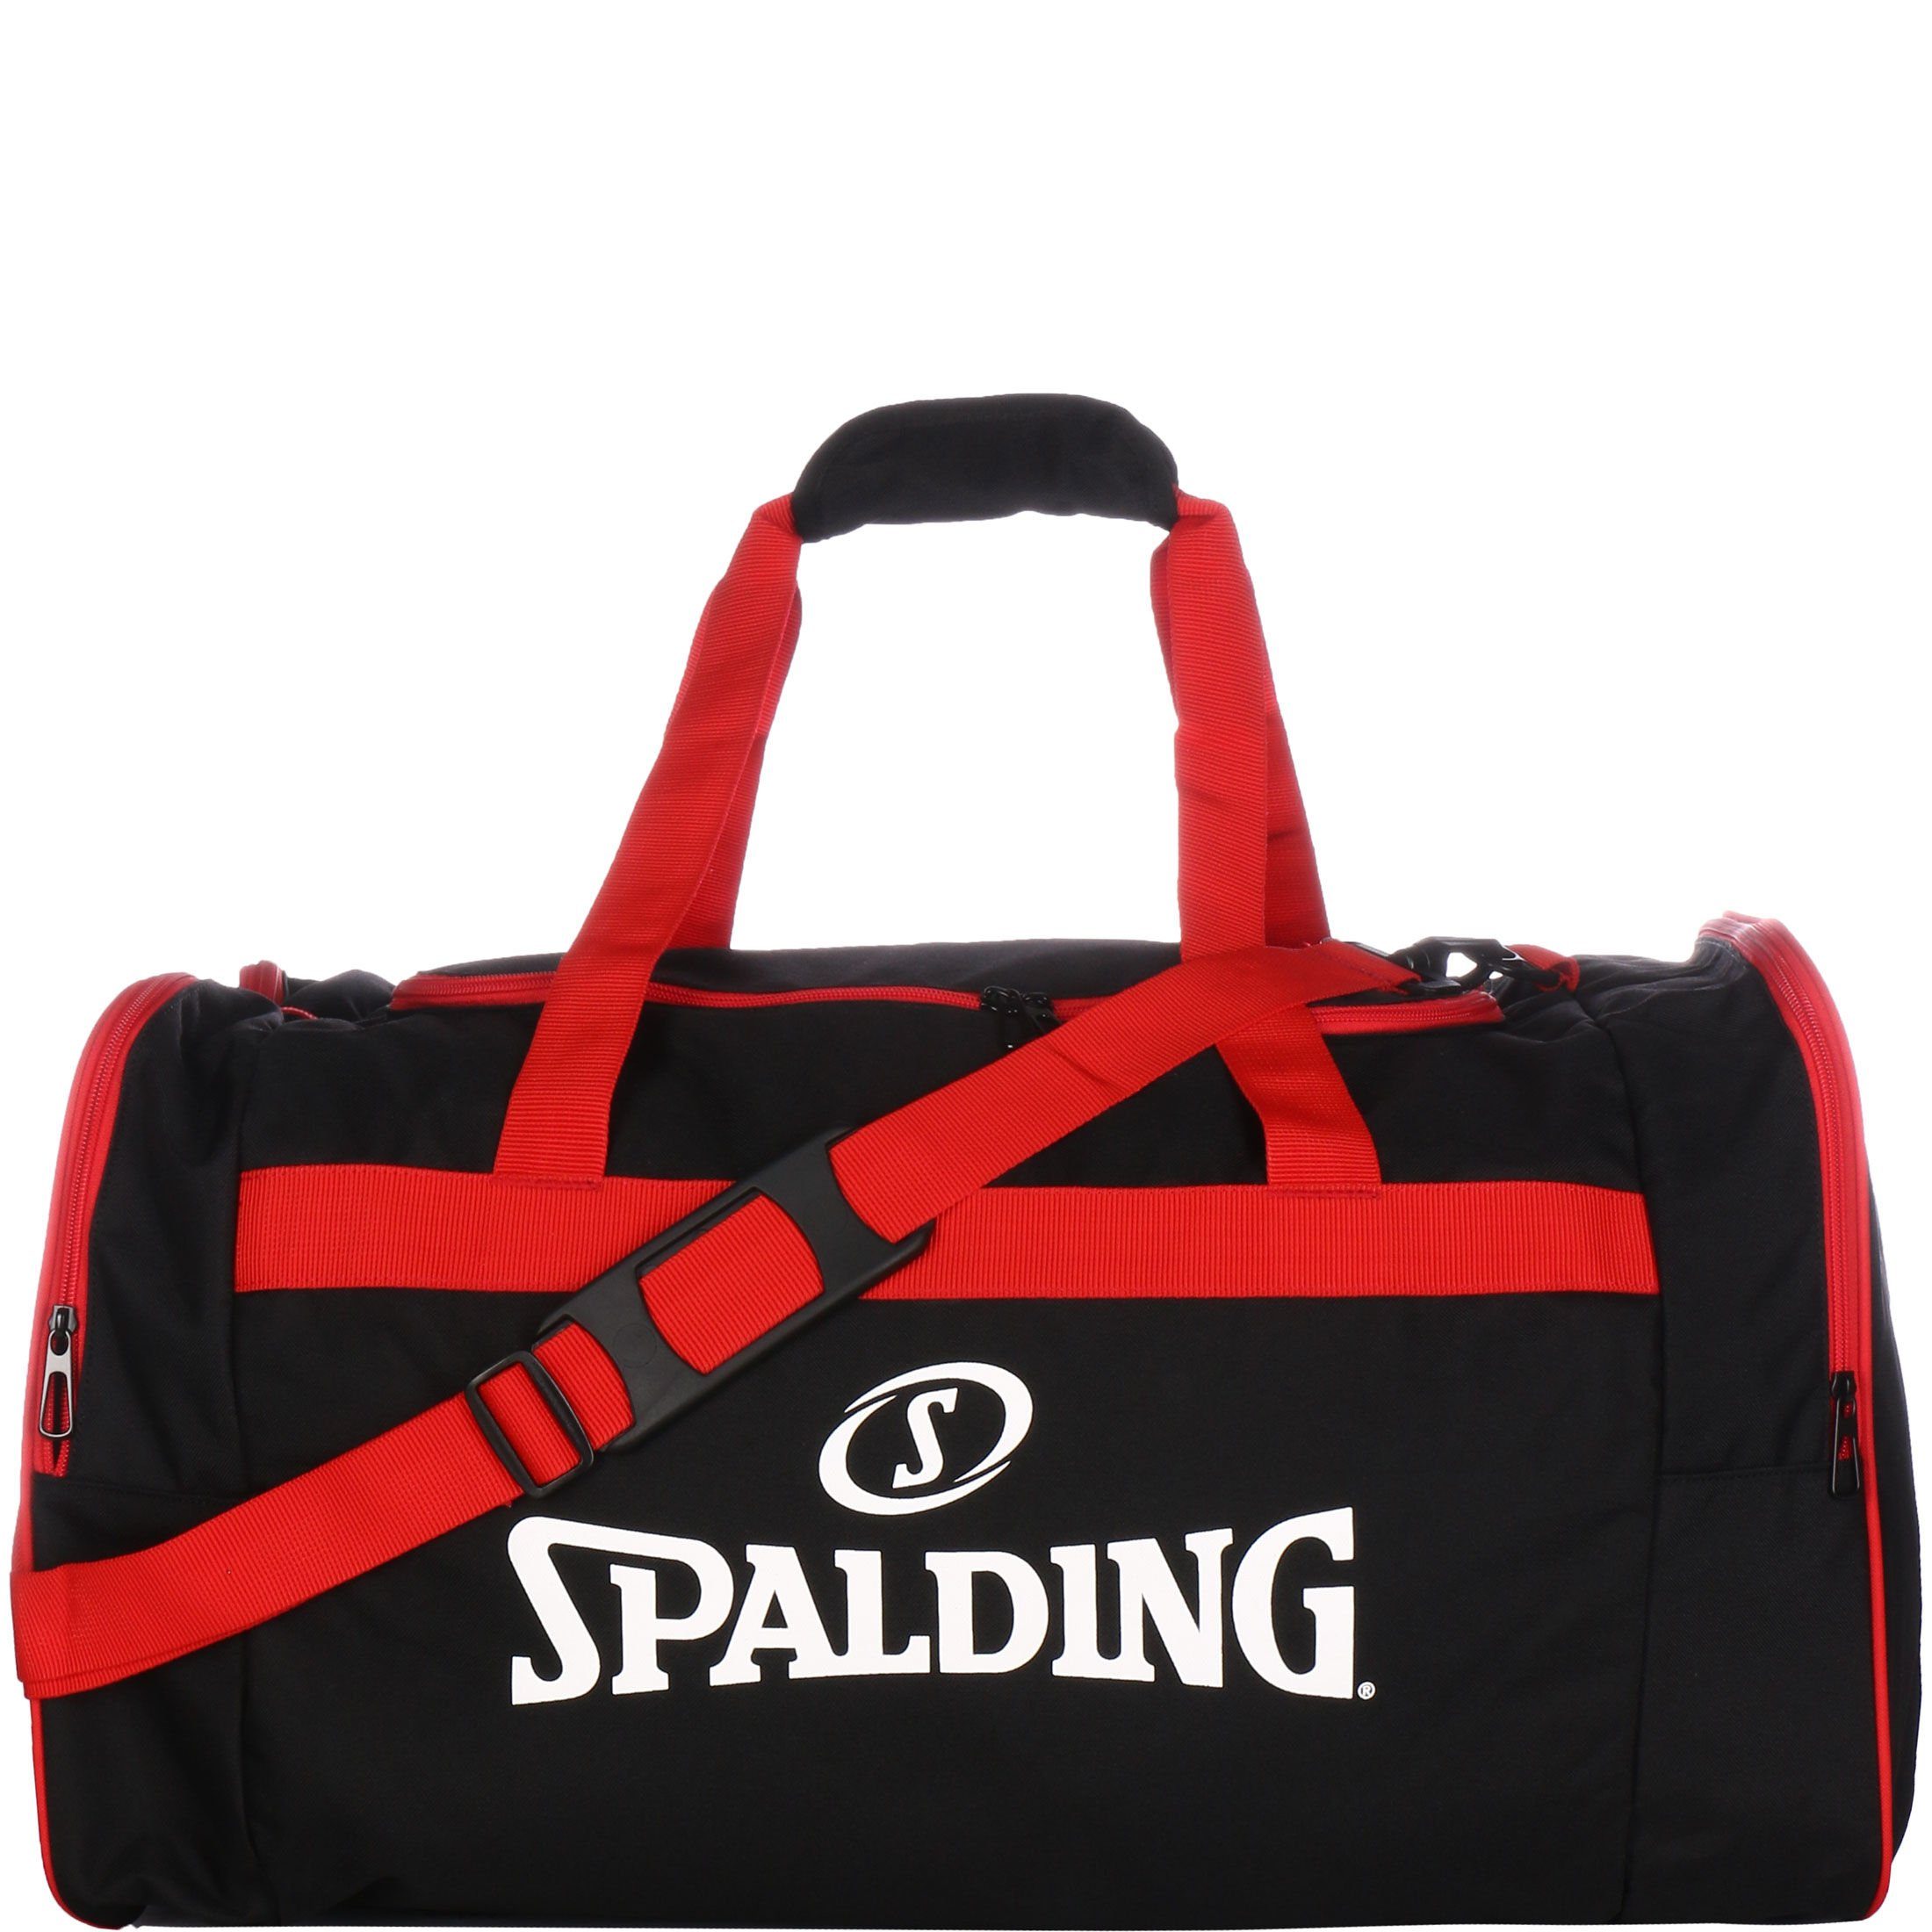 Spalding Sporttasche Team Bag Large Sporttasche